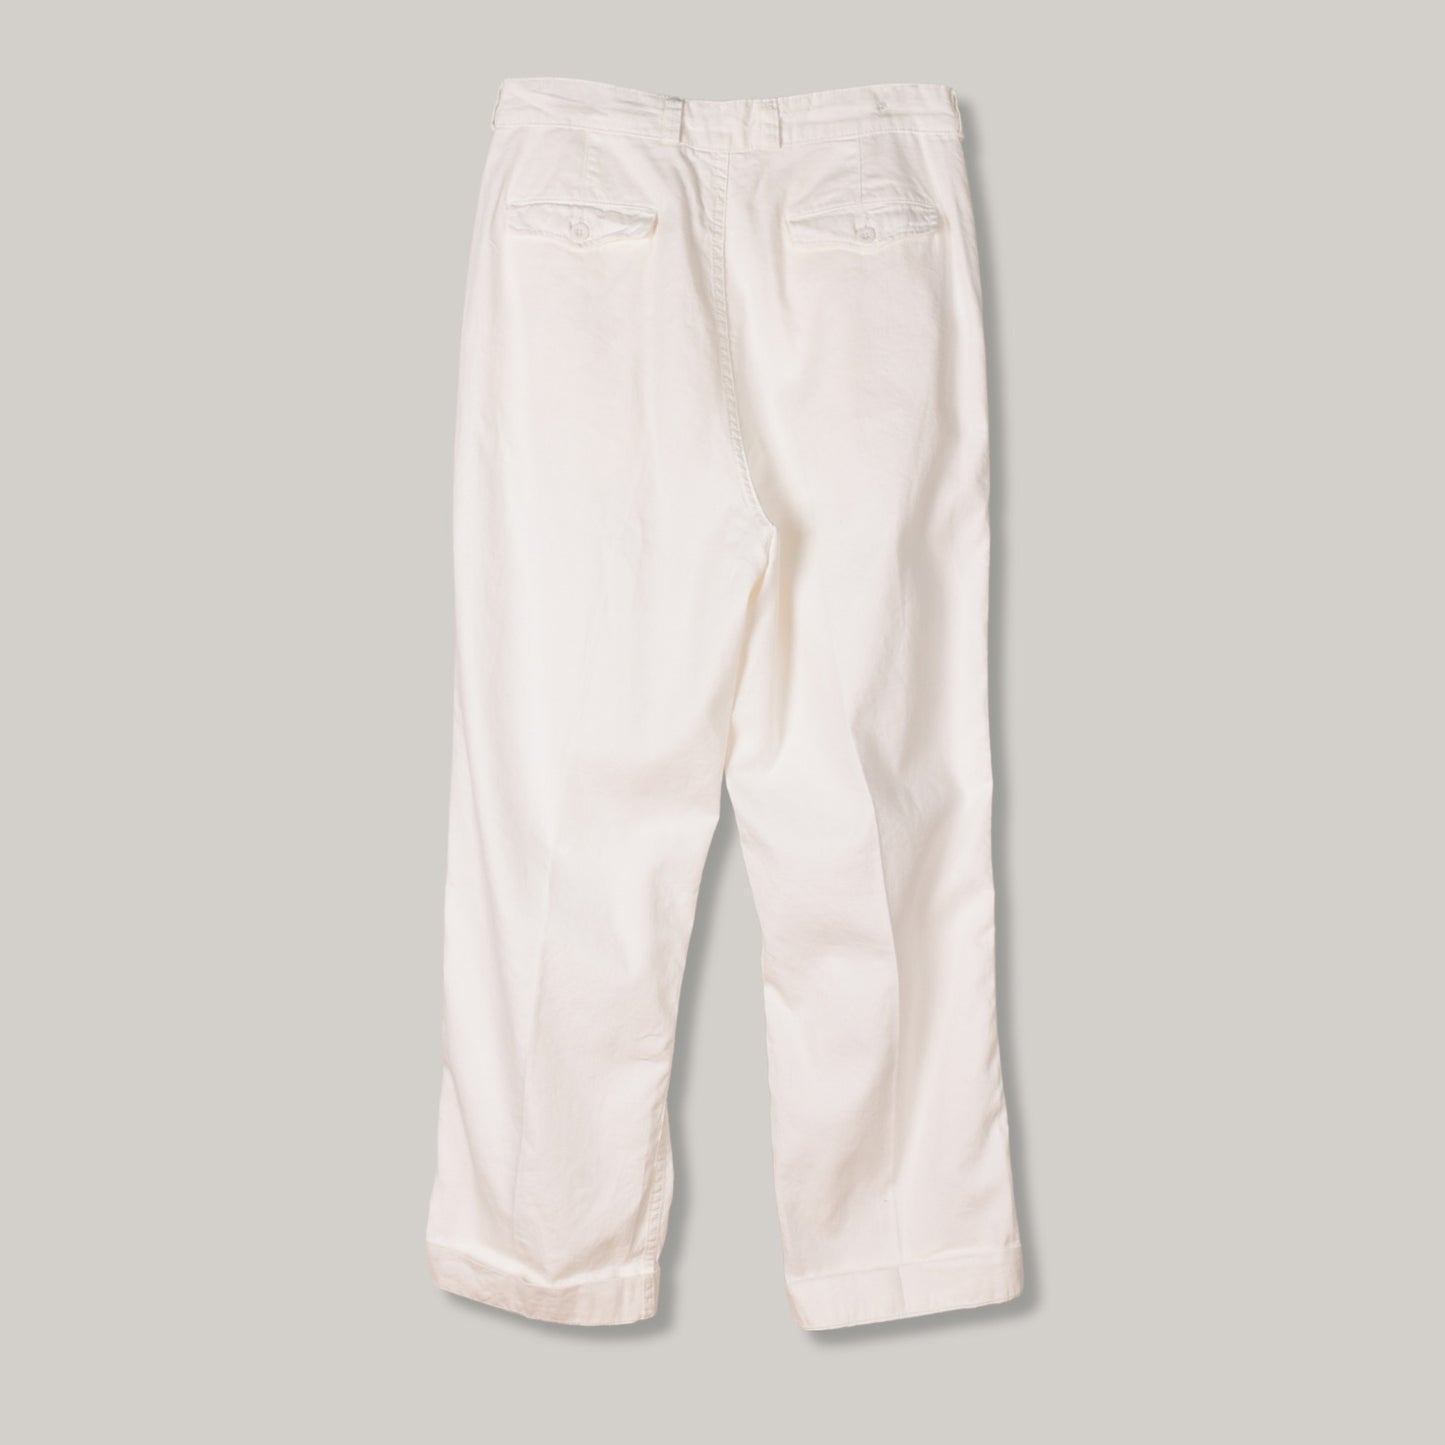 USED CASATLANTIC TANGER PANTS - OFF WHITE